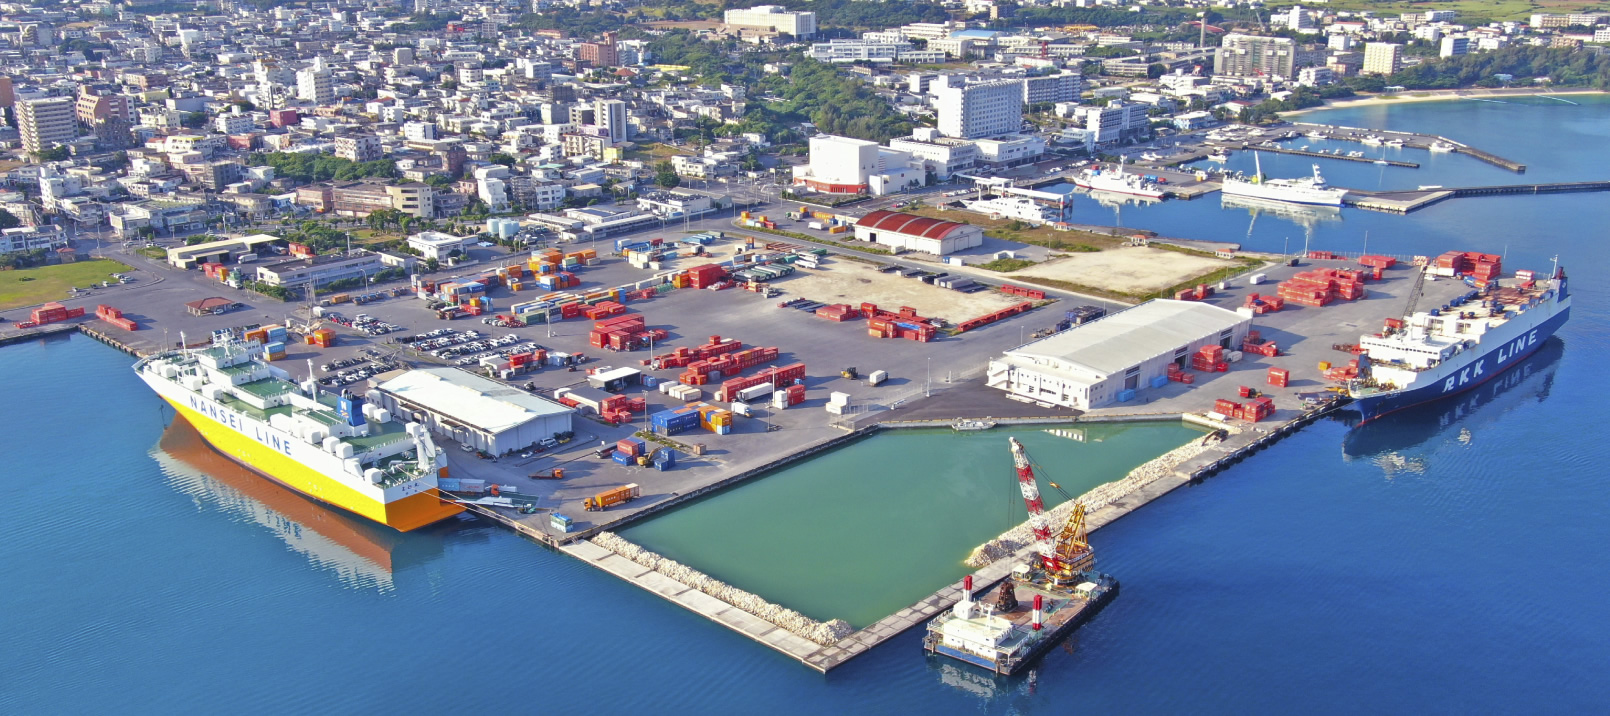 平良港複合一貫輸送ターミナル整備事業